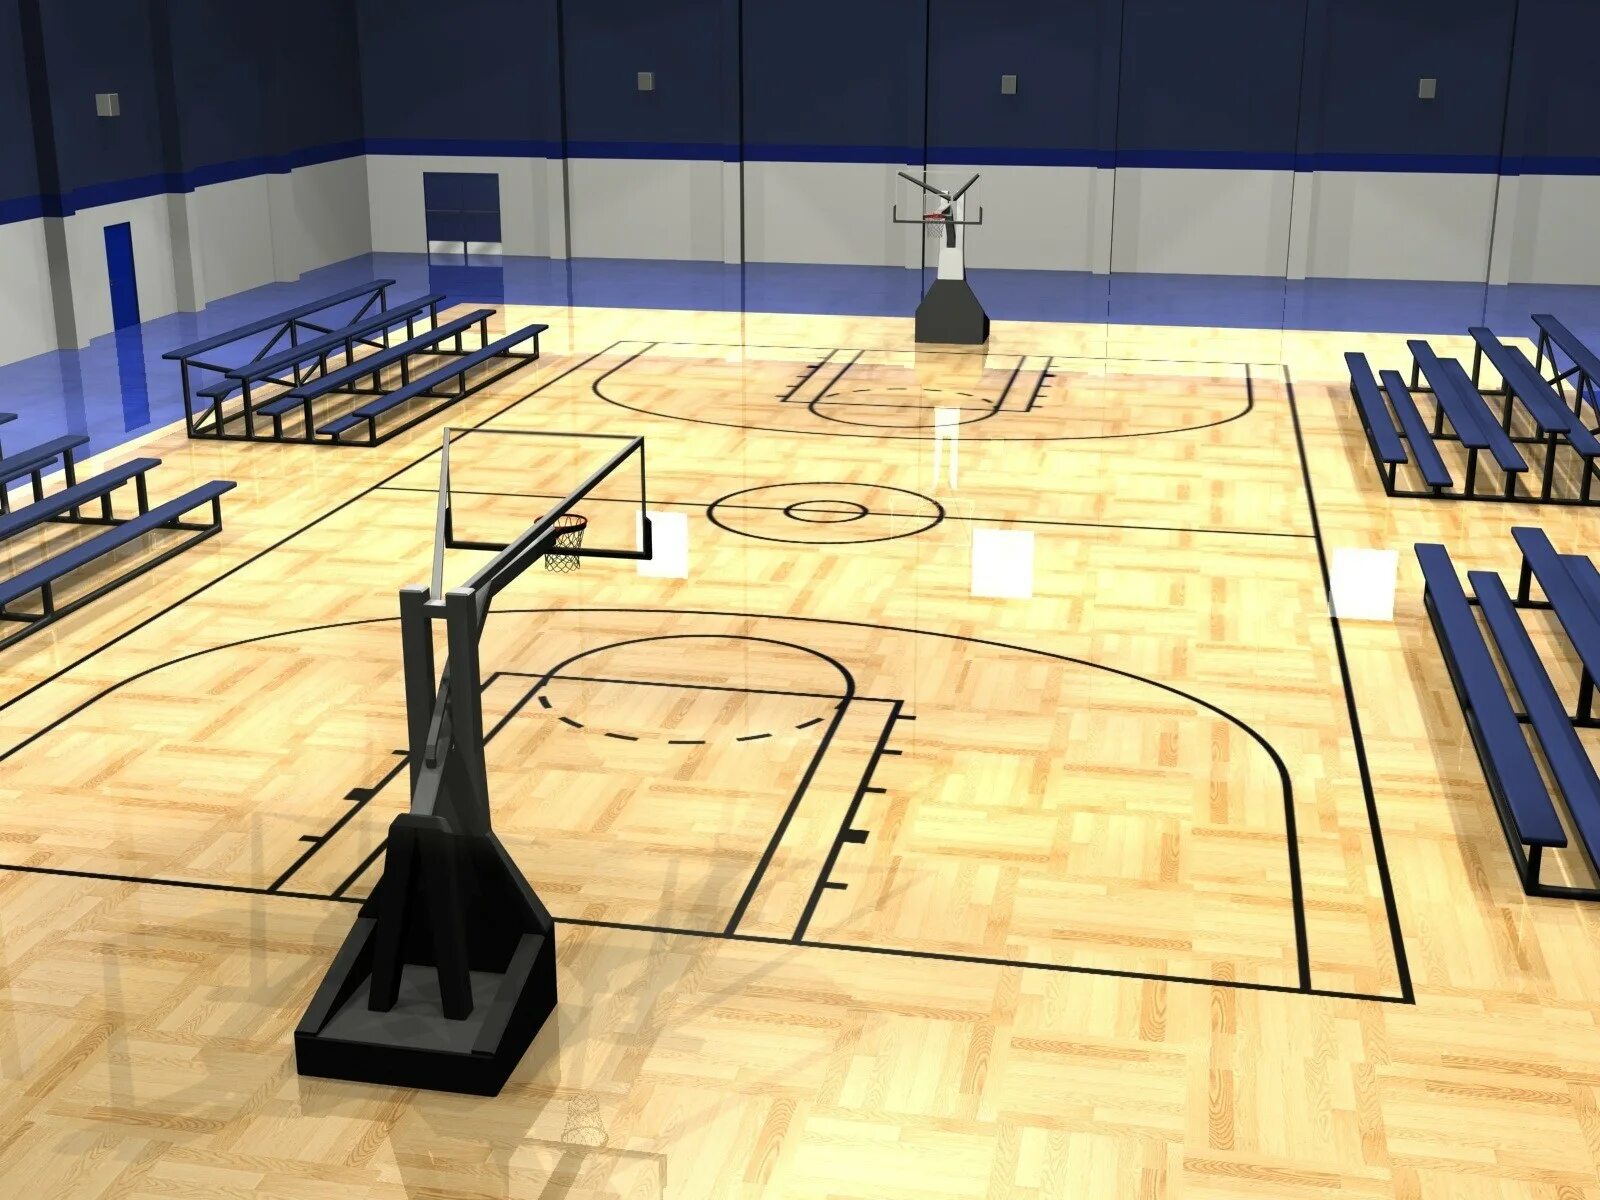 Играй 1 в зале. Баскетбольная площадка НБА пол. Баскетбольная площадка зал вид сбоку. Баскетбольный зал Drake. Баскетбольная площадка сбоку в зале.